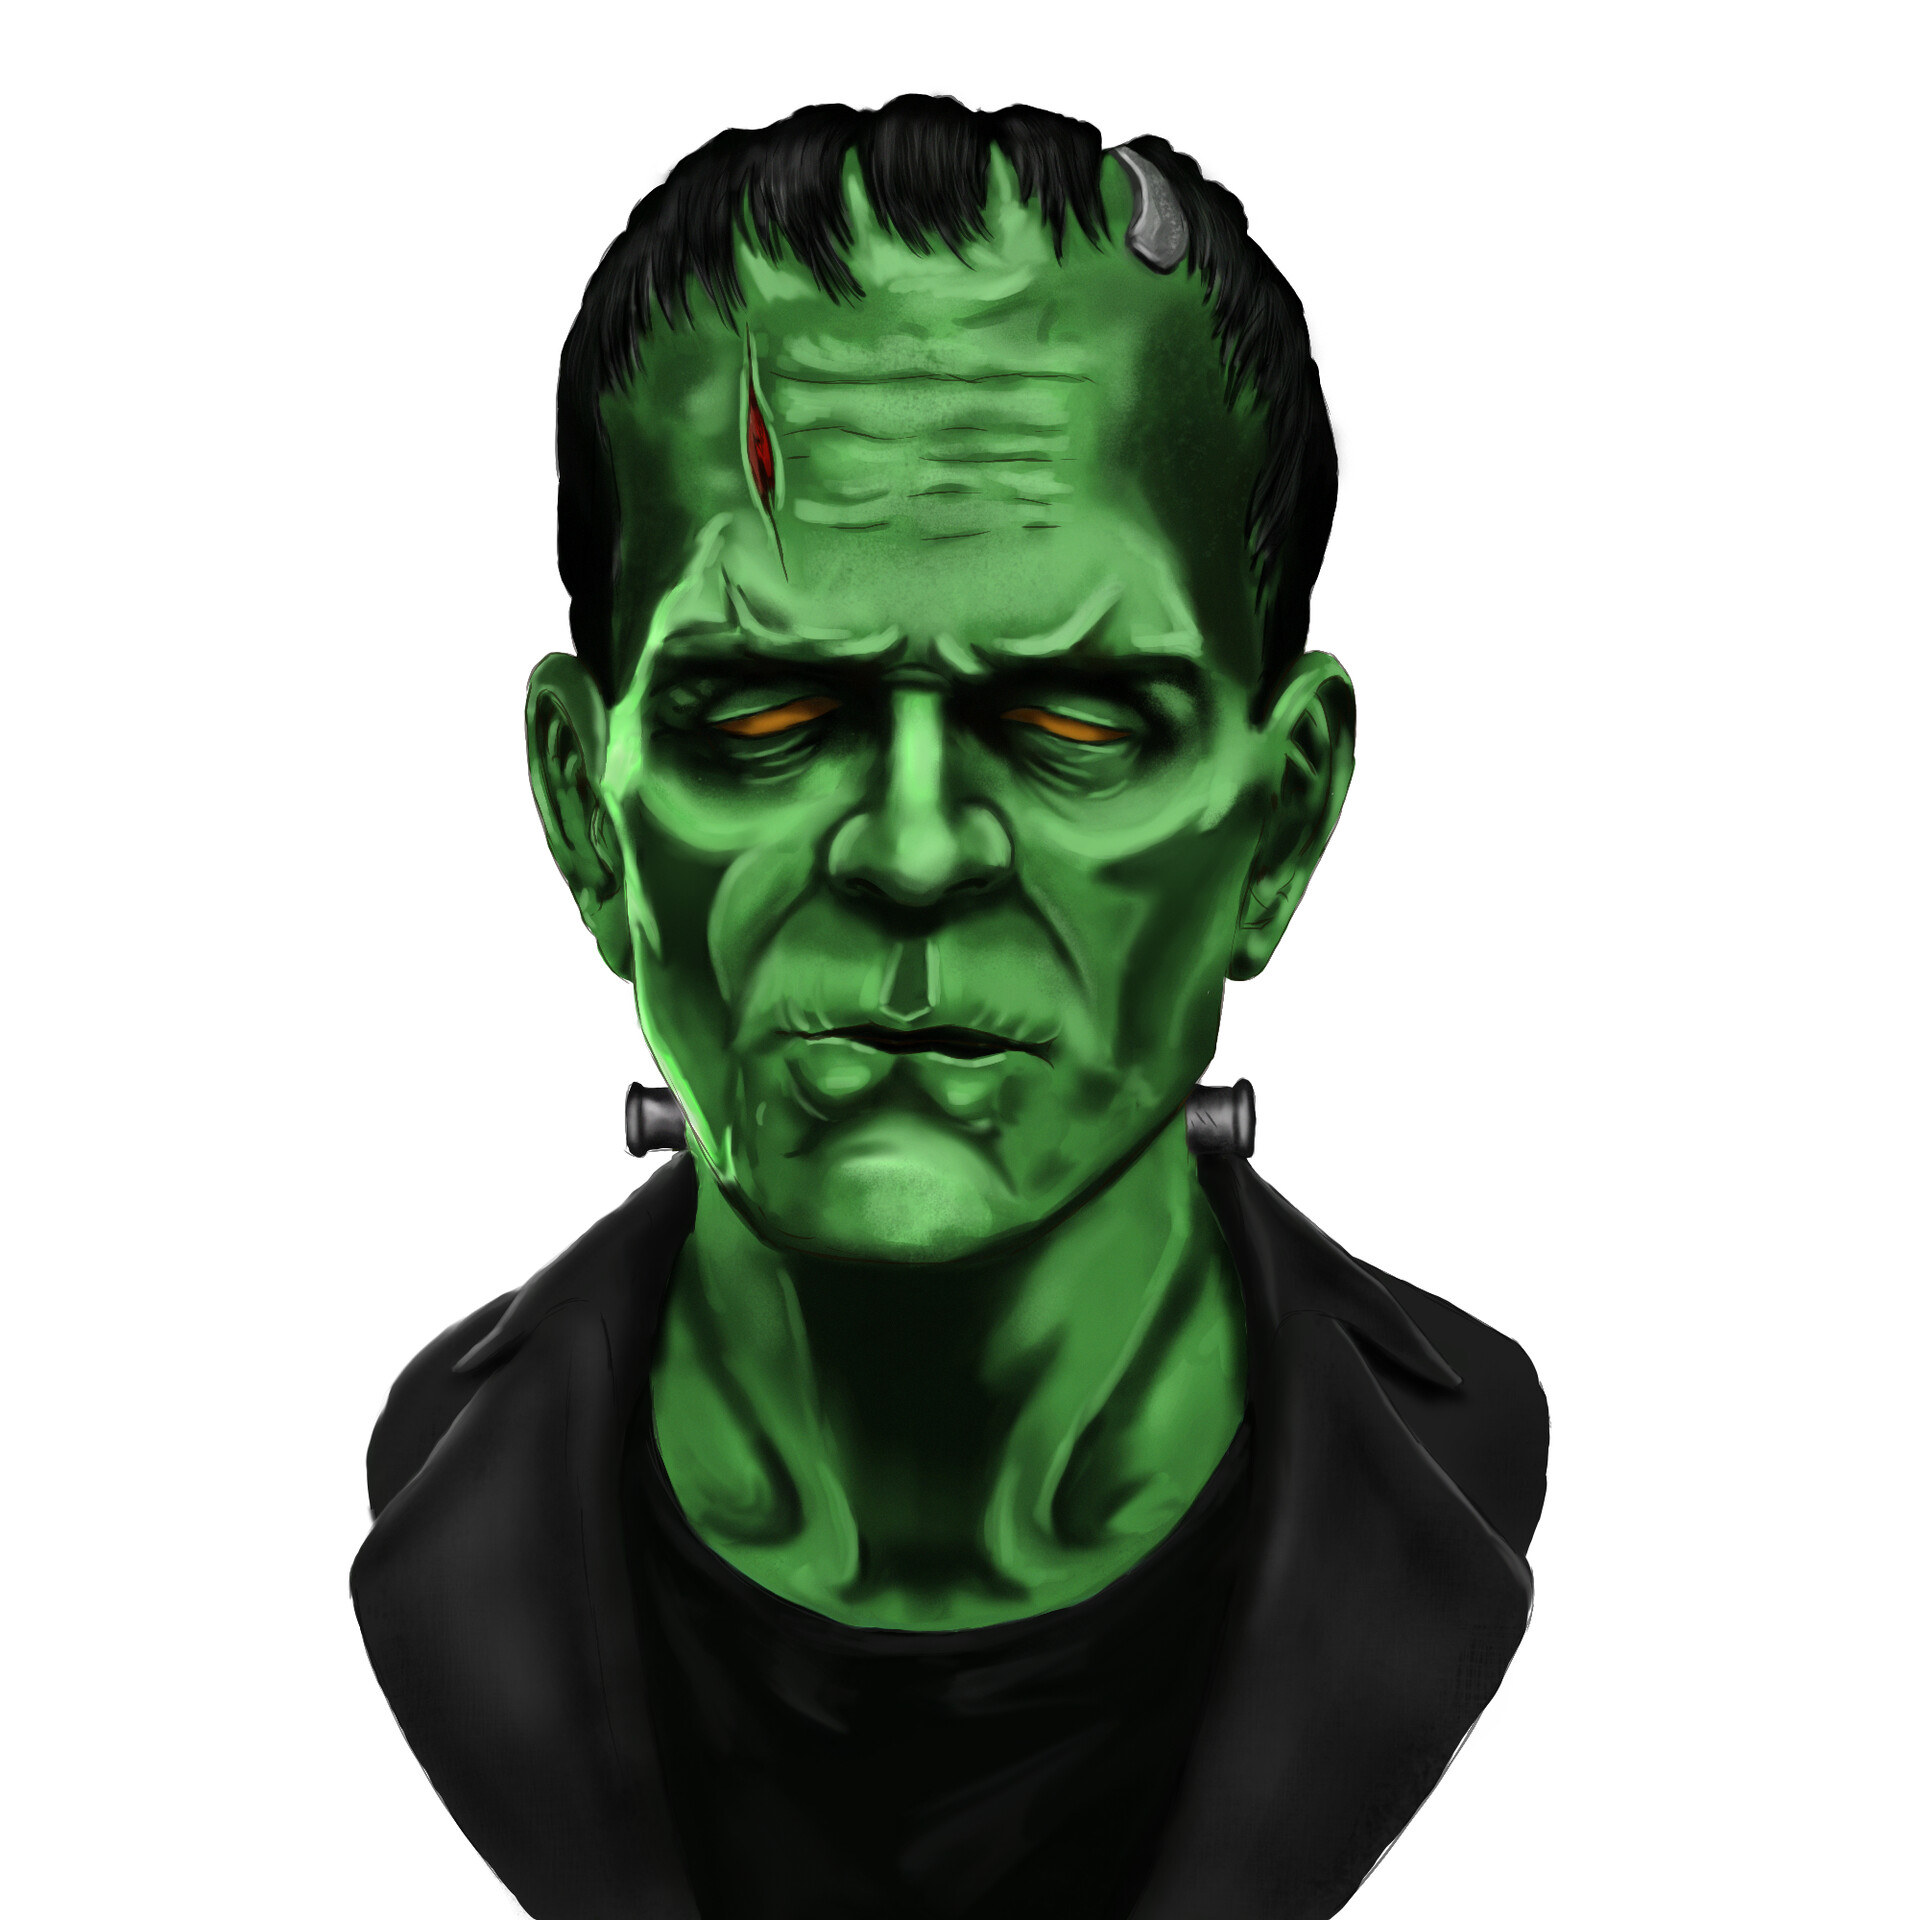 ArtStation - Frankenstein Monster